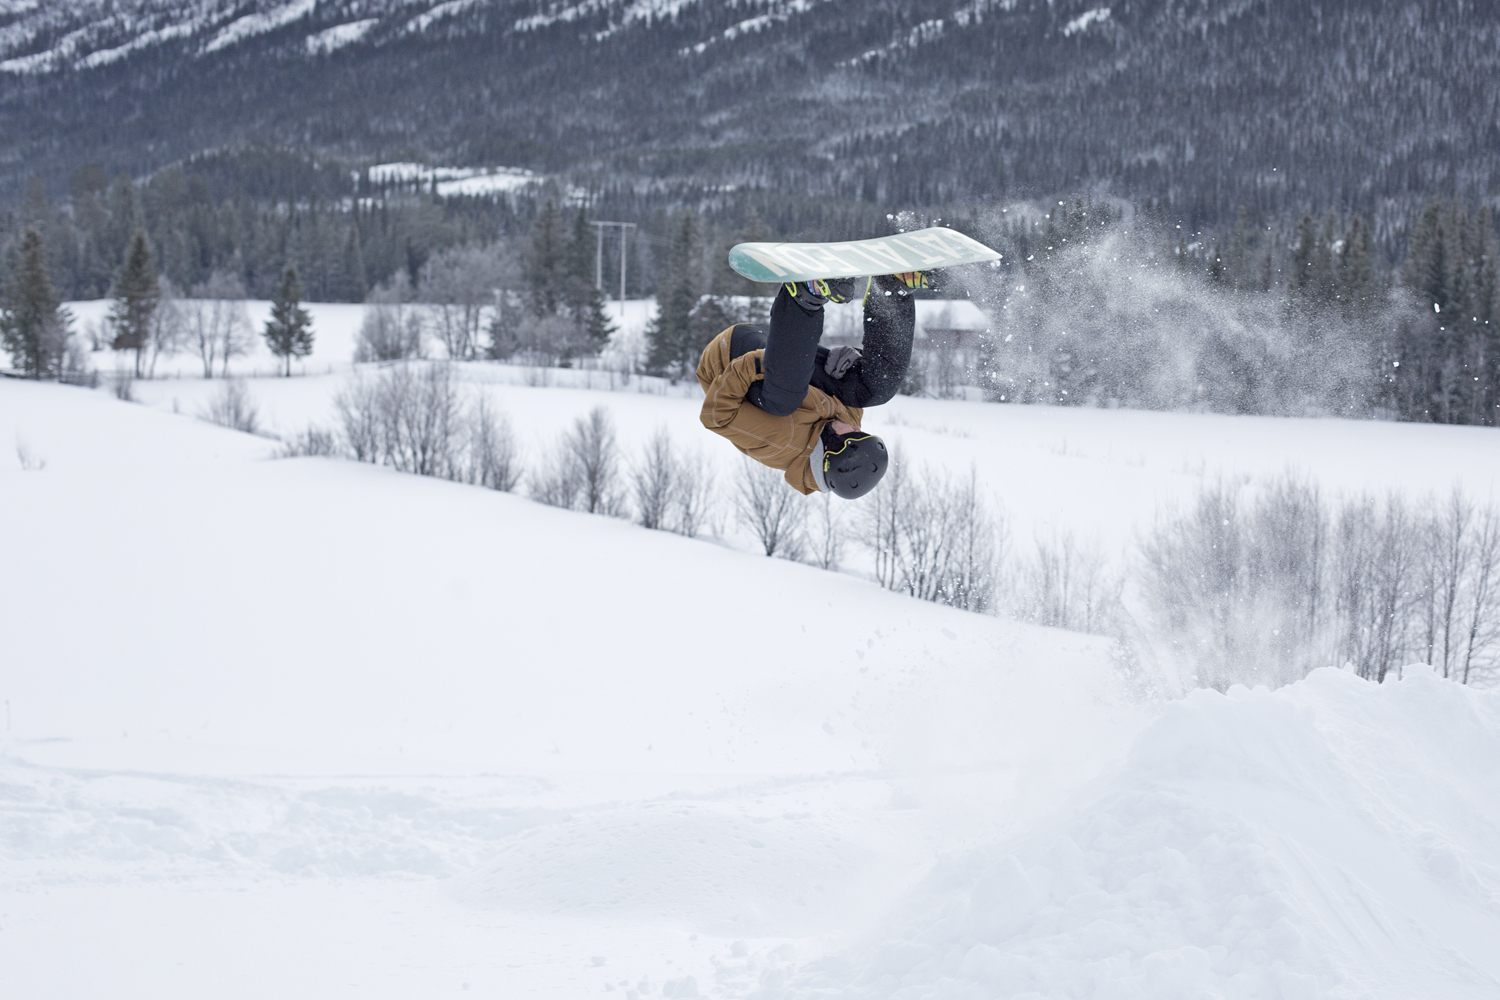 Jens aka skier laver frontflip på snowboard